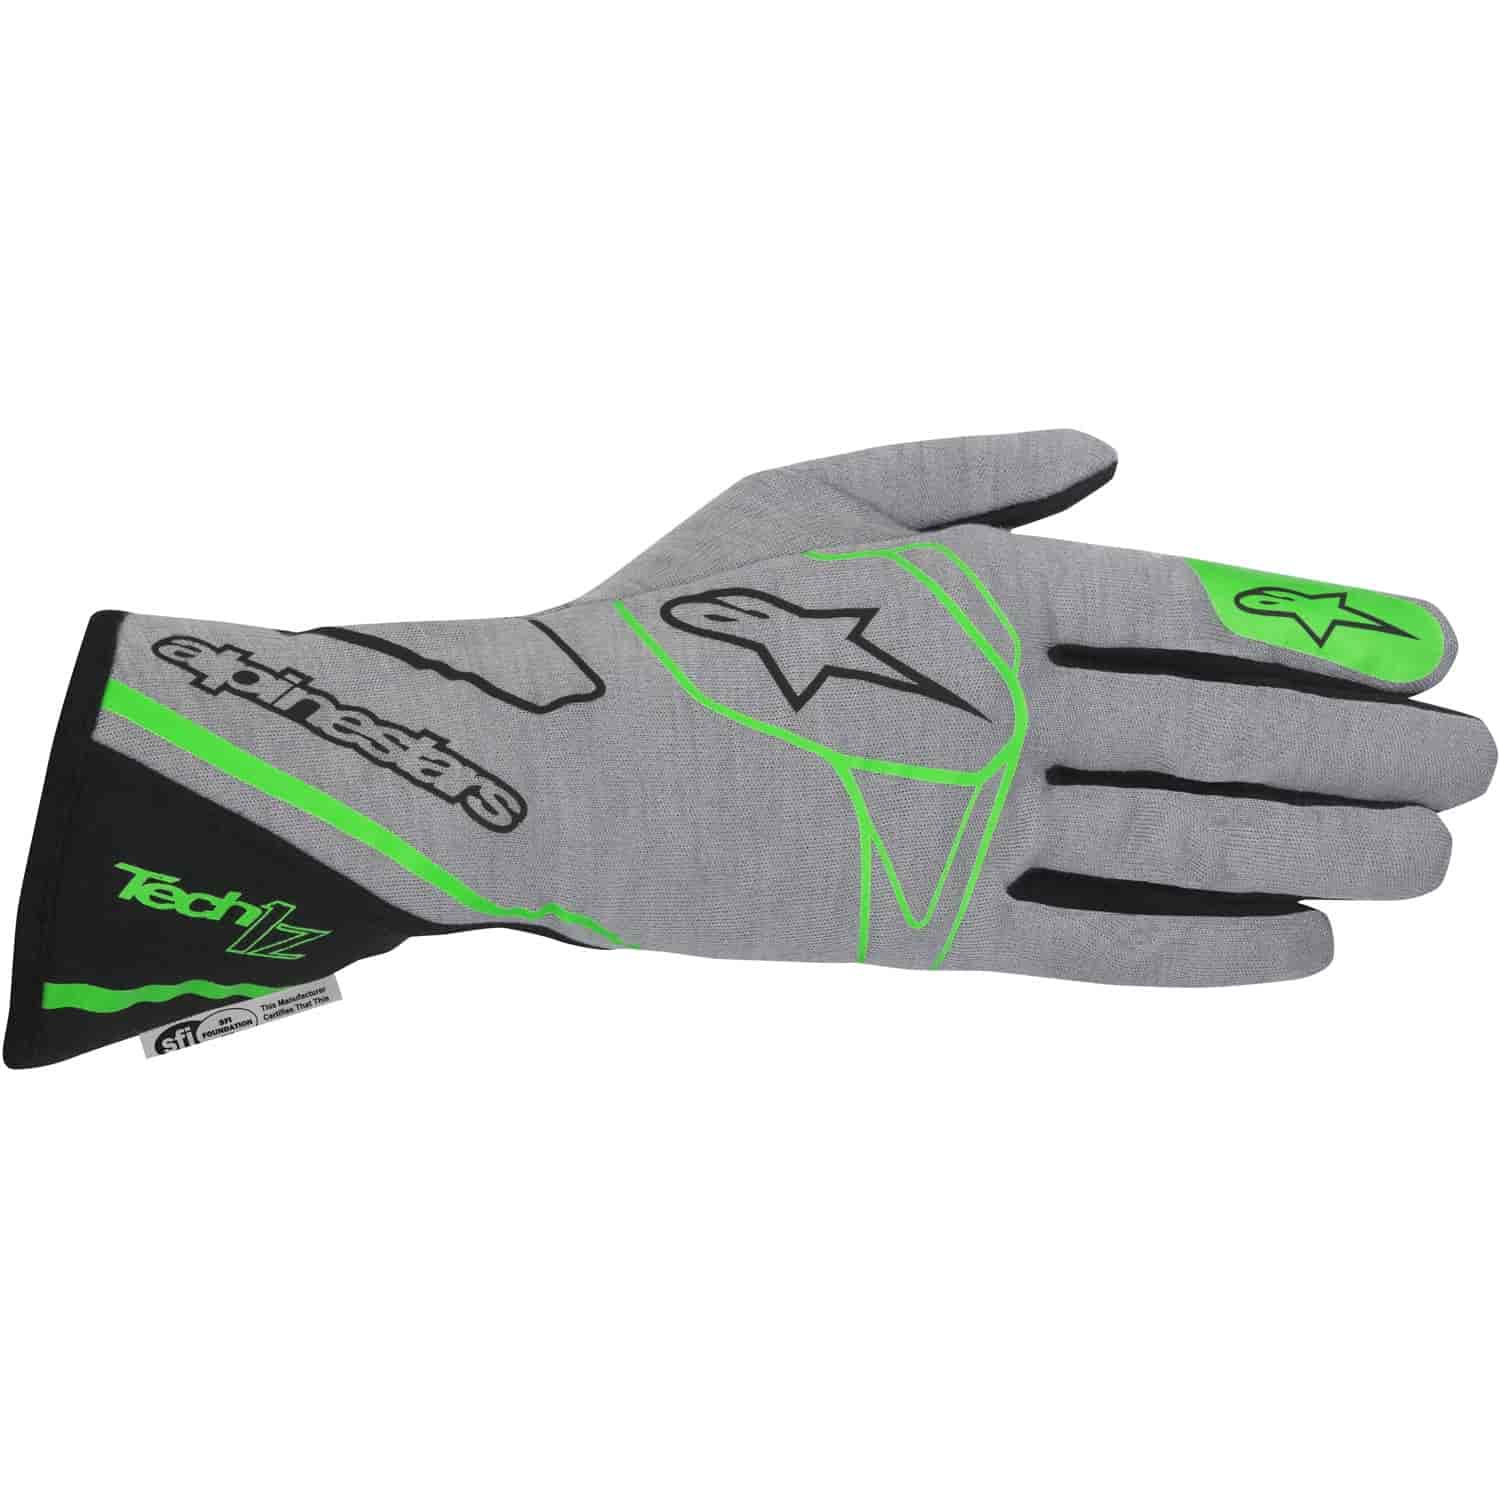 Tech 1-Z Glove Gray/Fluorescent Green/Black SFI 3.3/5